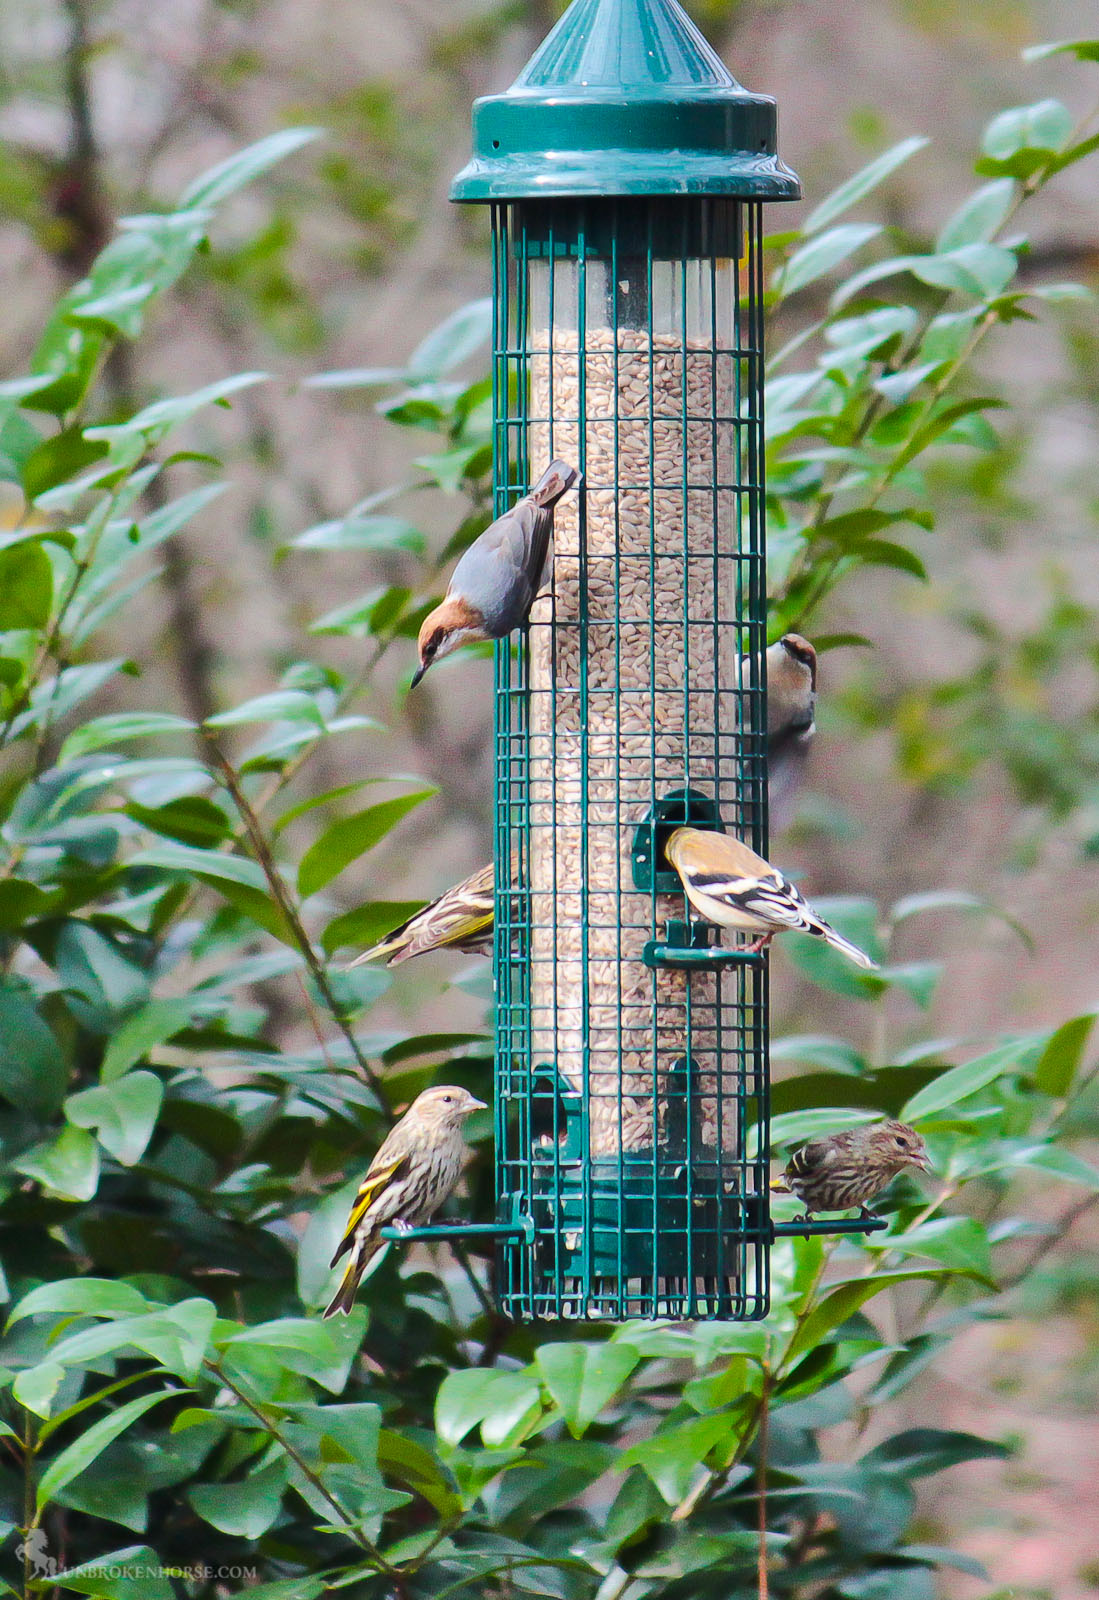 I mix of birds are enjoying the feeder.